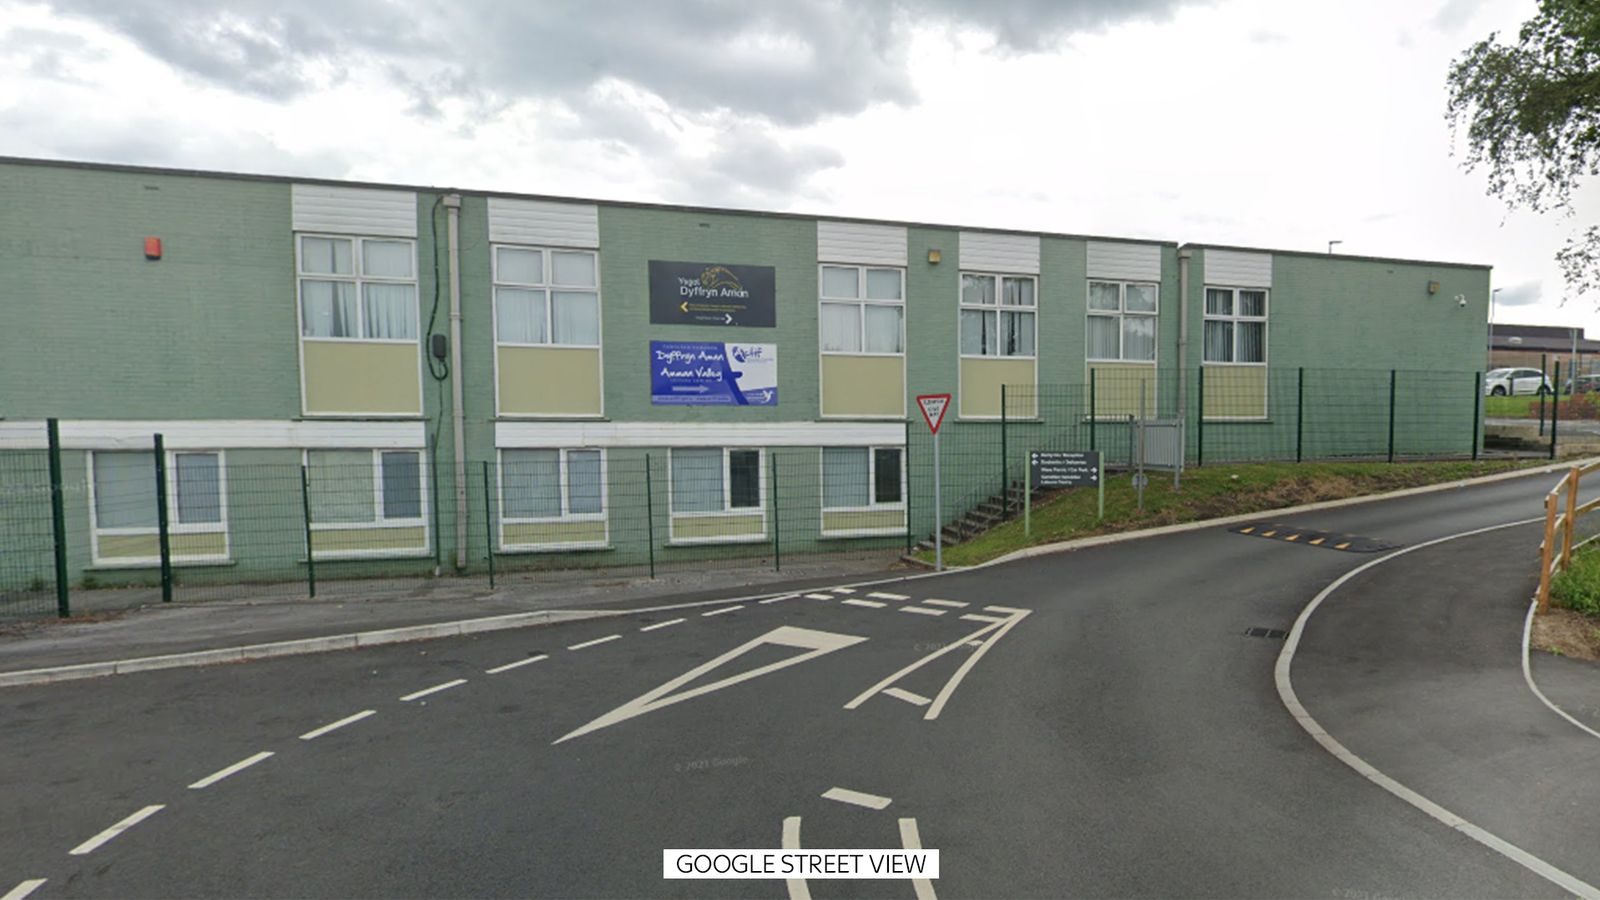 Trois personnes blessées et une arrêtée lors d'un « incident majeur » à l'école d'Ammanford, dans l'ouest du Pays de Galles |  Nouvelles du Royaume-Uni